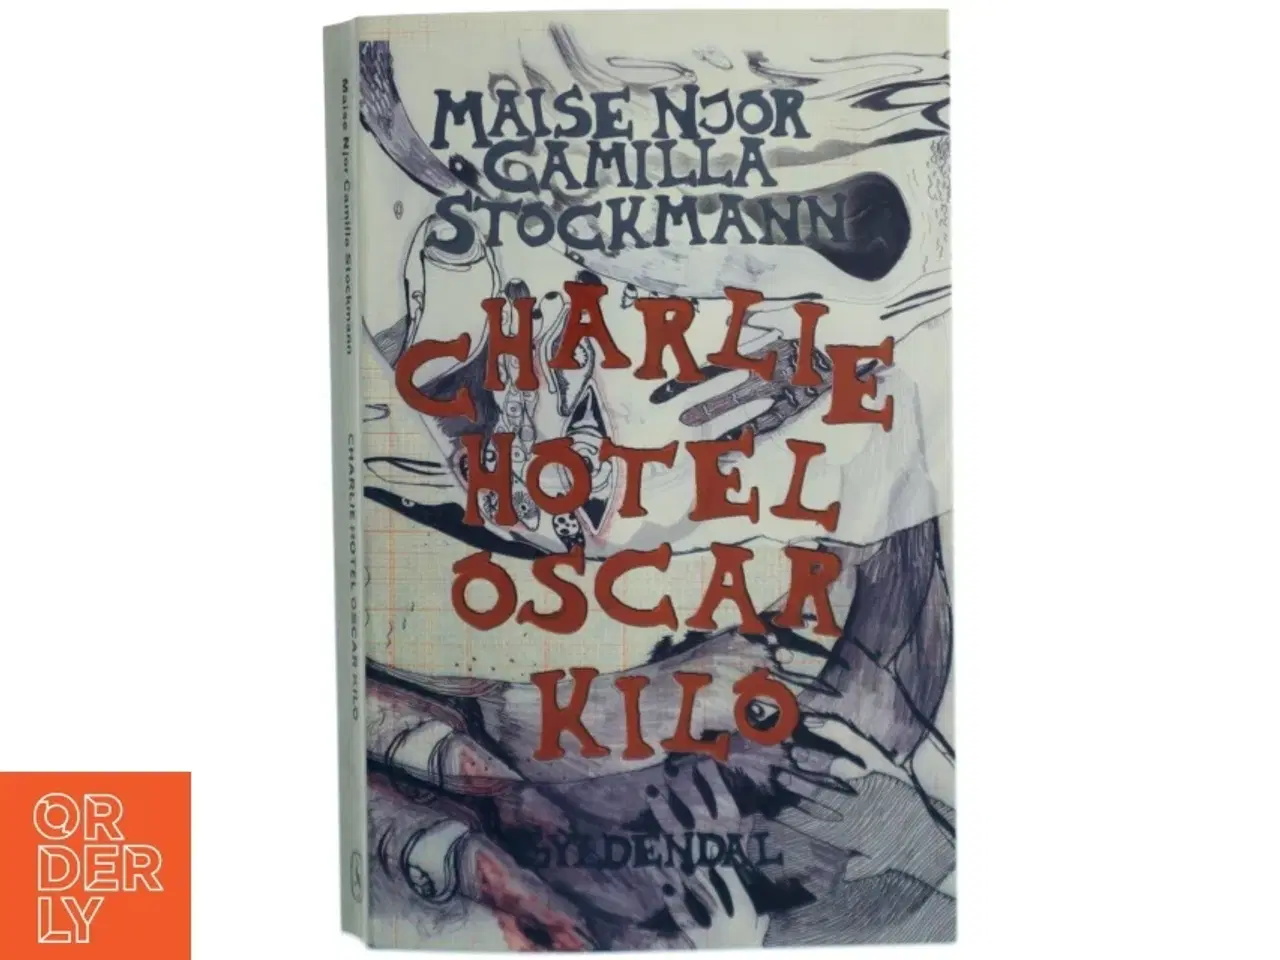 Billede 1 - Charlie Hotel Oscar Kilo af Maise Njor og Camilla Stockmann(Bog)